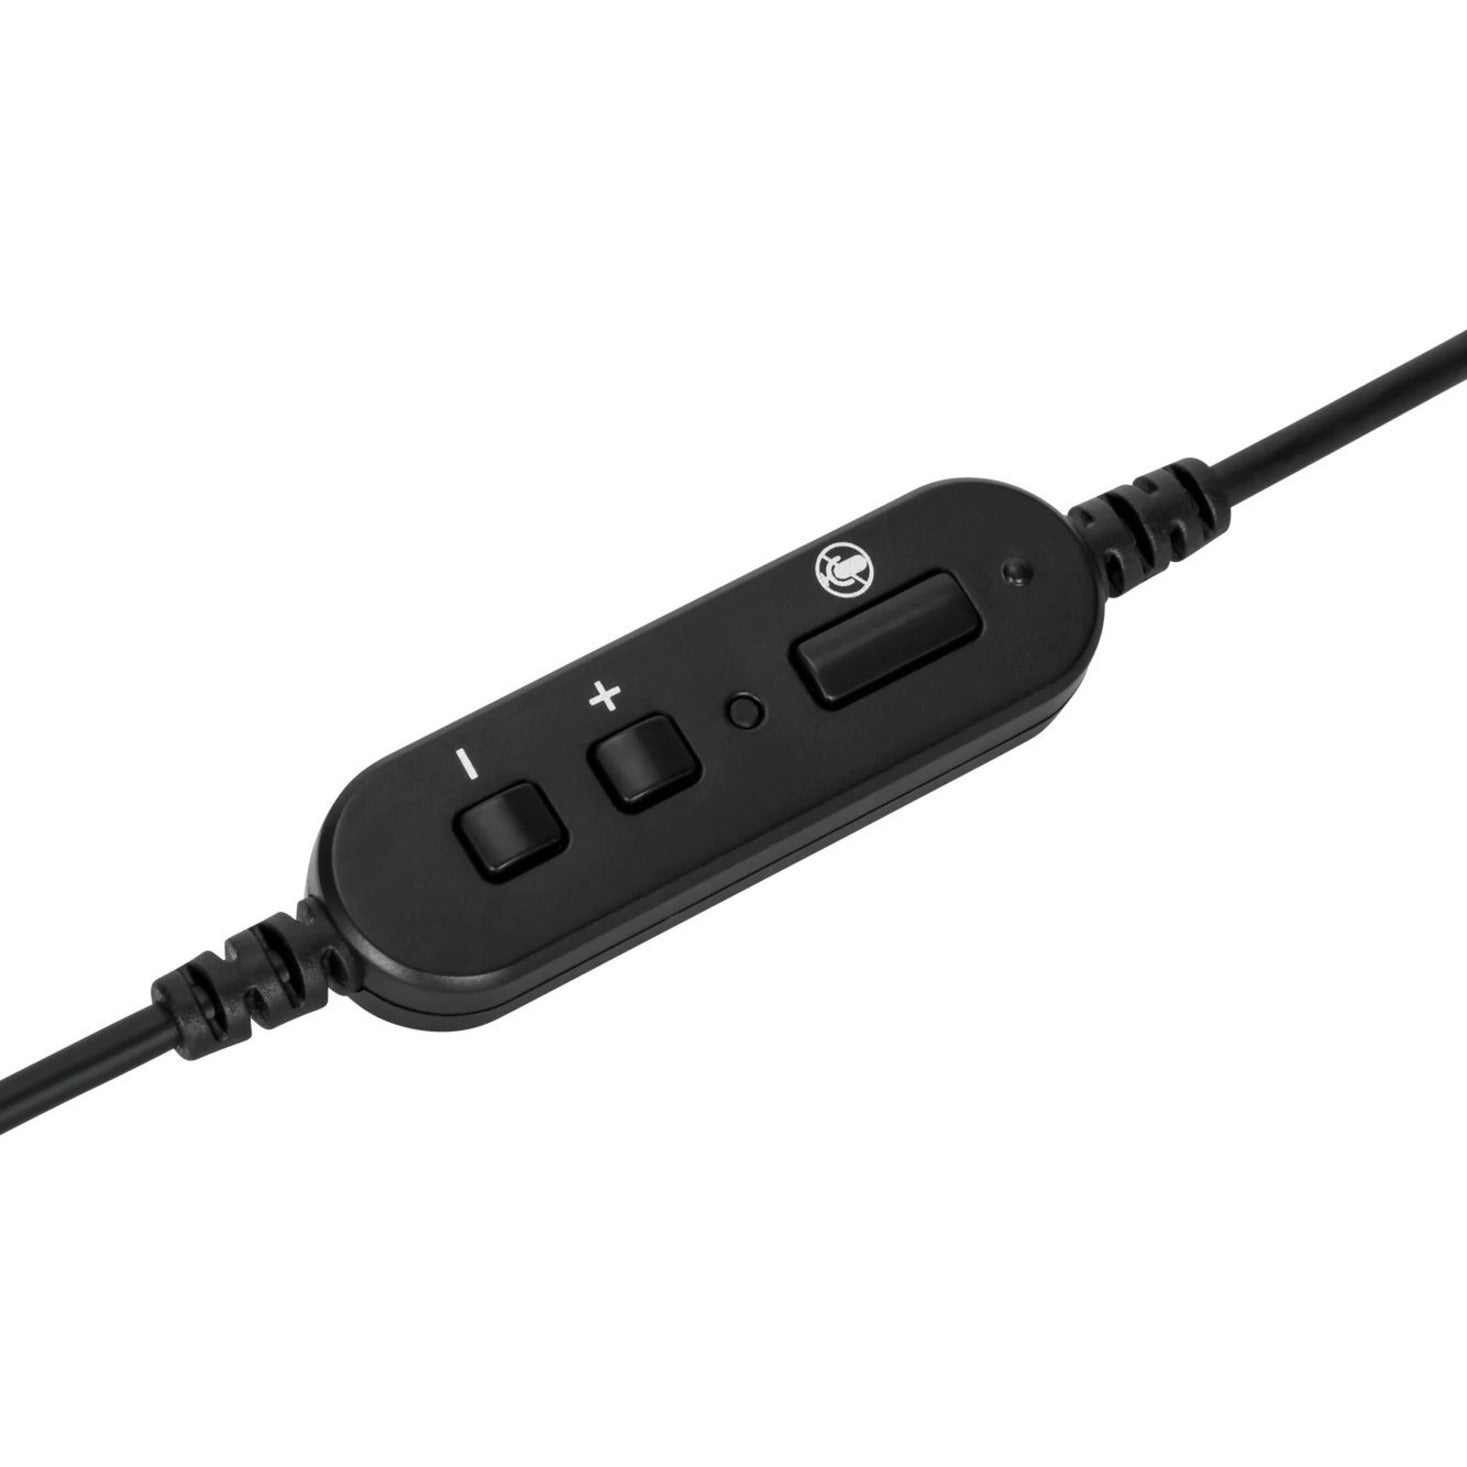 Casque Targus AEH101TT filaire mono casque léger sur l'oreille avec microphone rotatif interface USB de type A